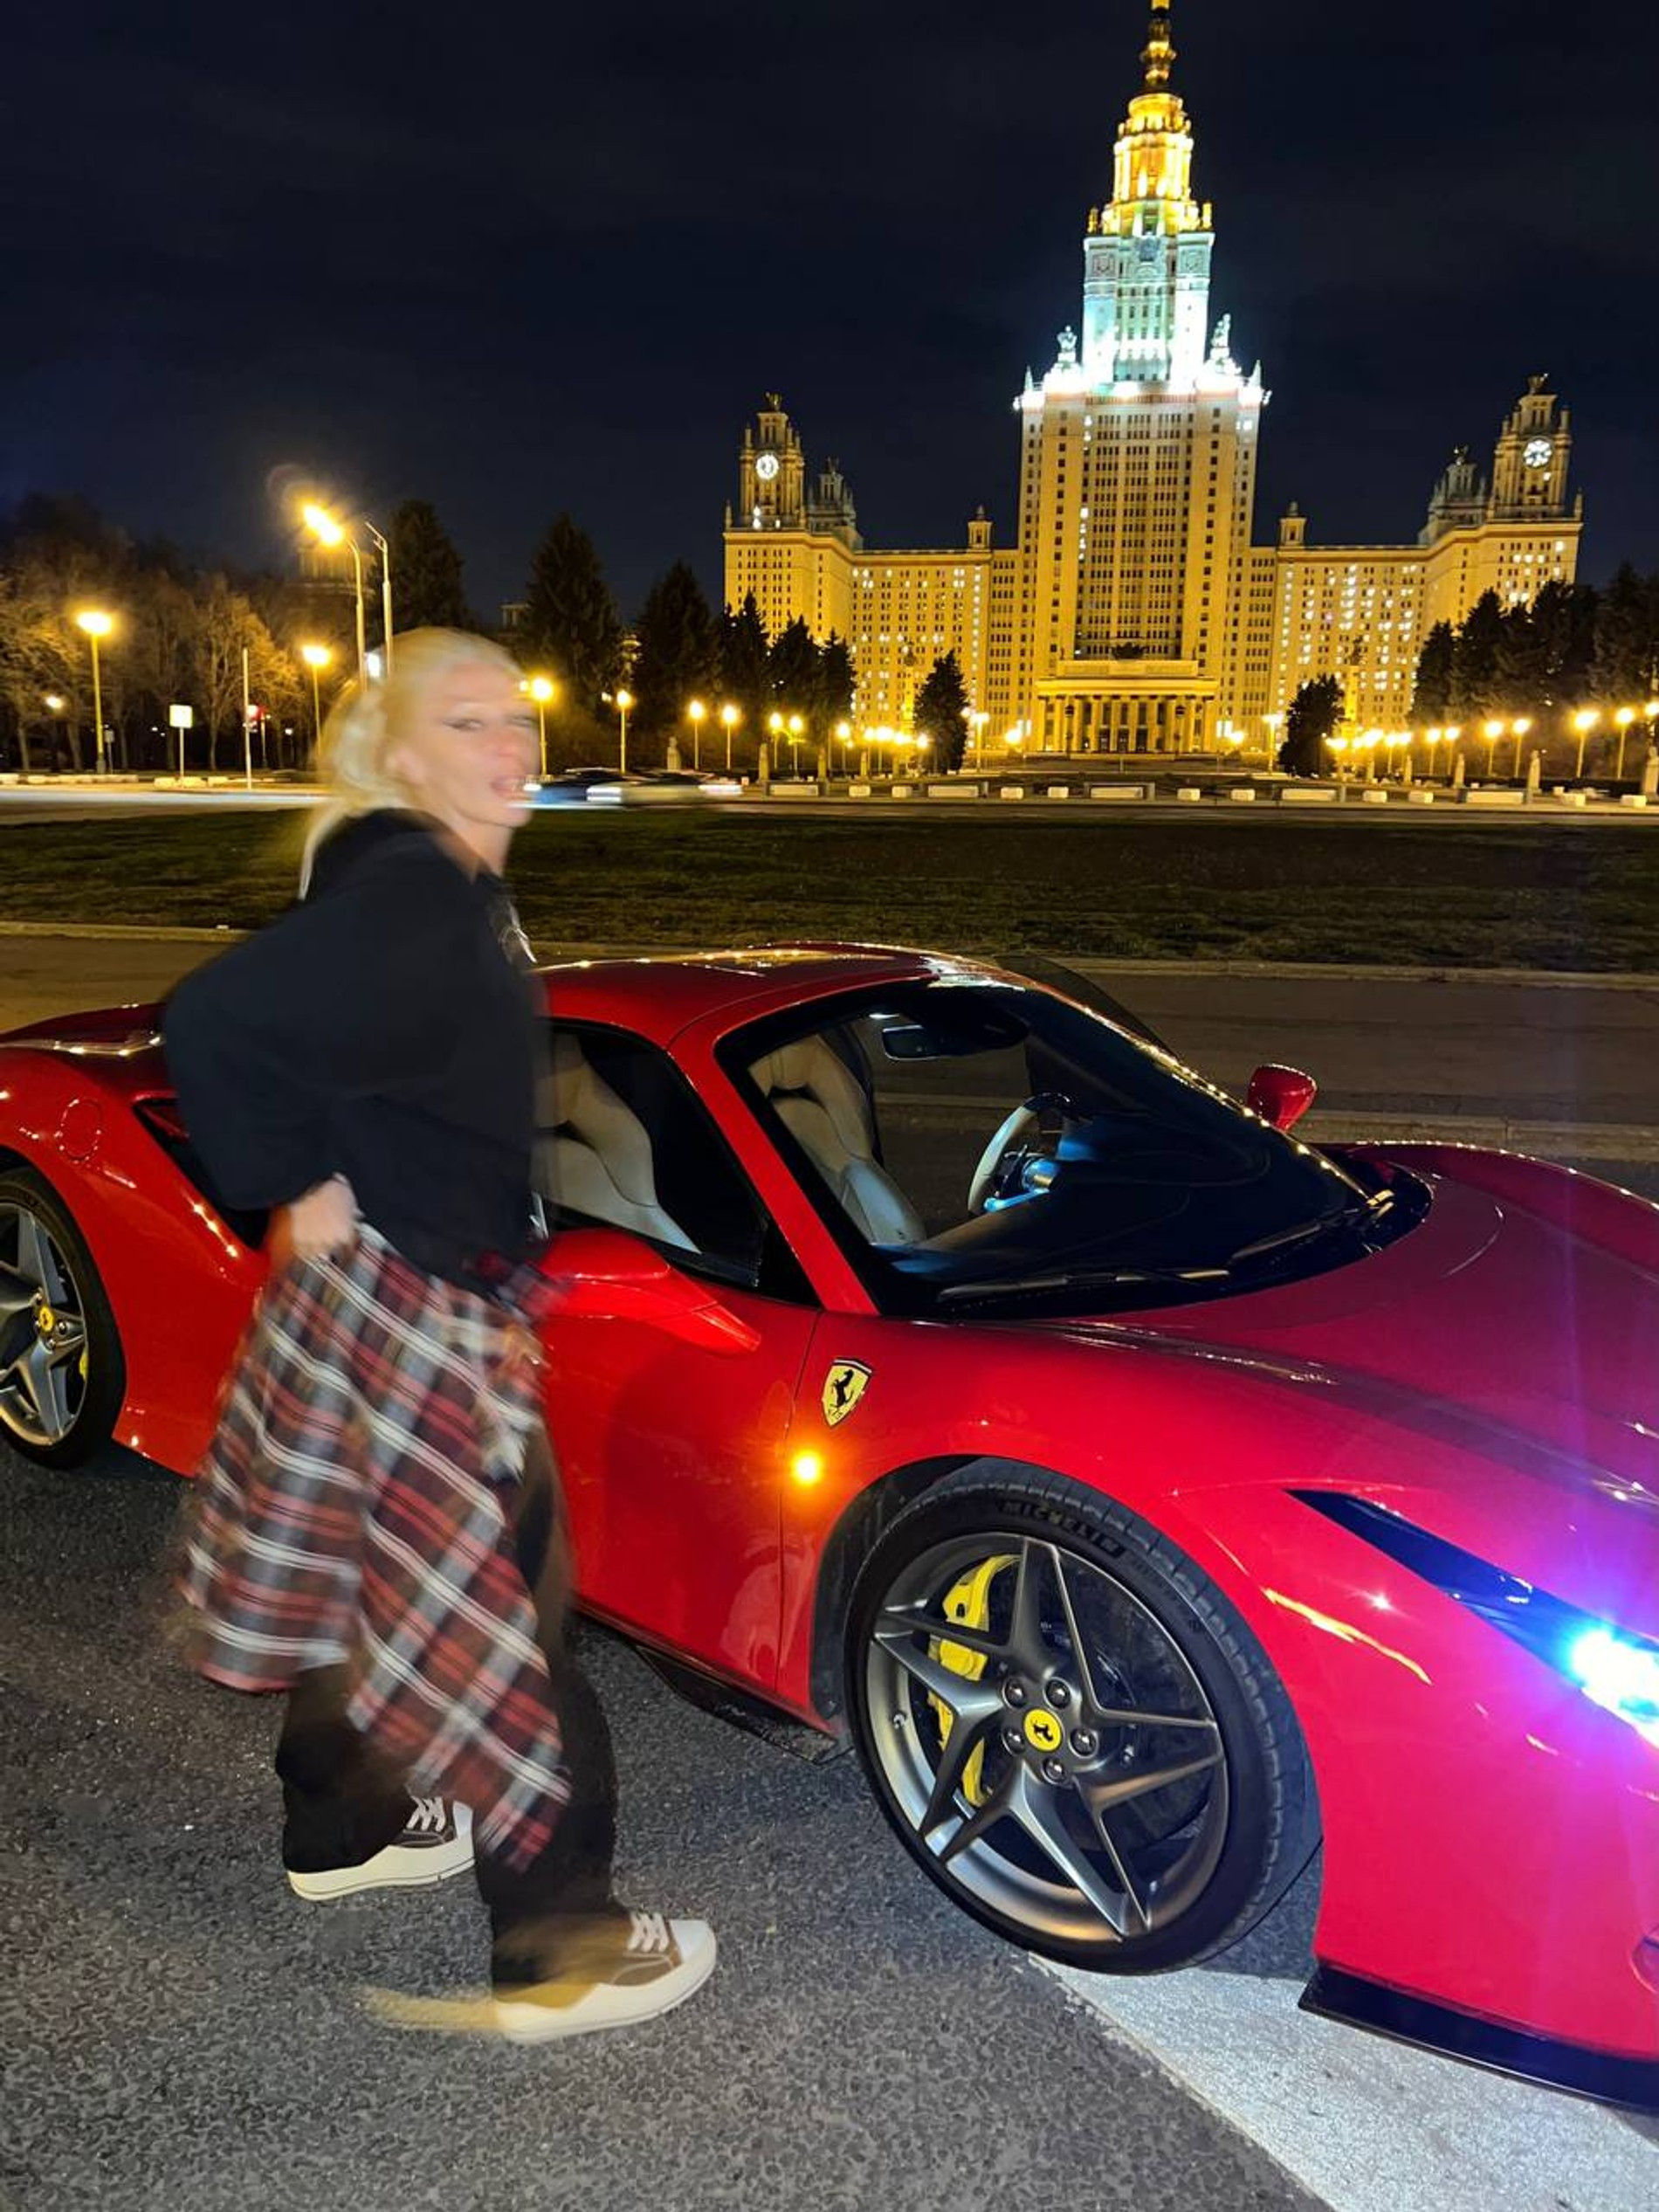 Настя Ивлеева рядом со своим Ferrari Tributo
Фото: Telegram-канал Насти Ивлеевой 